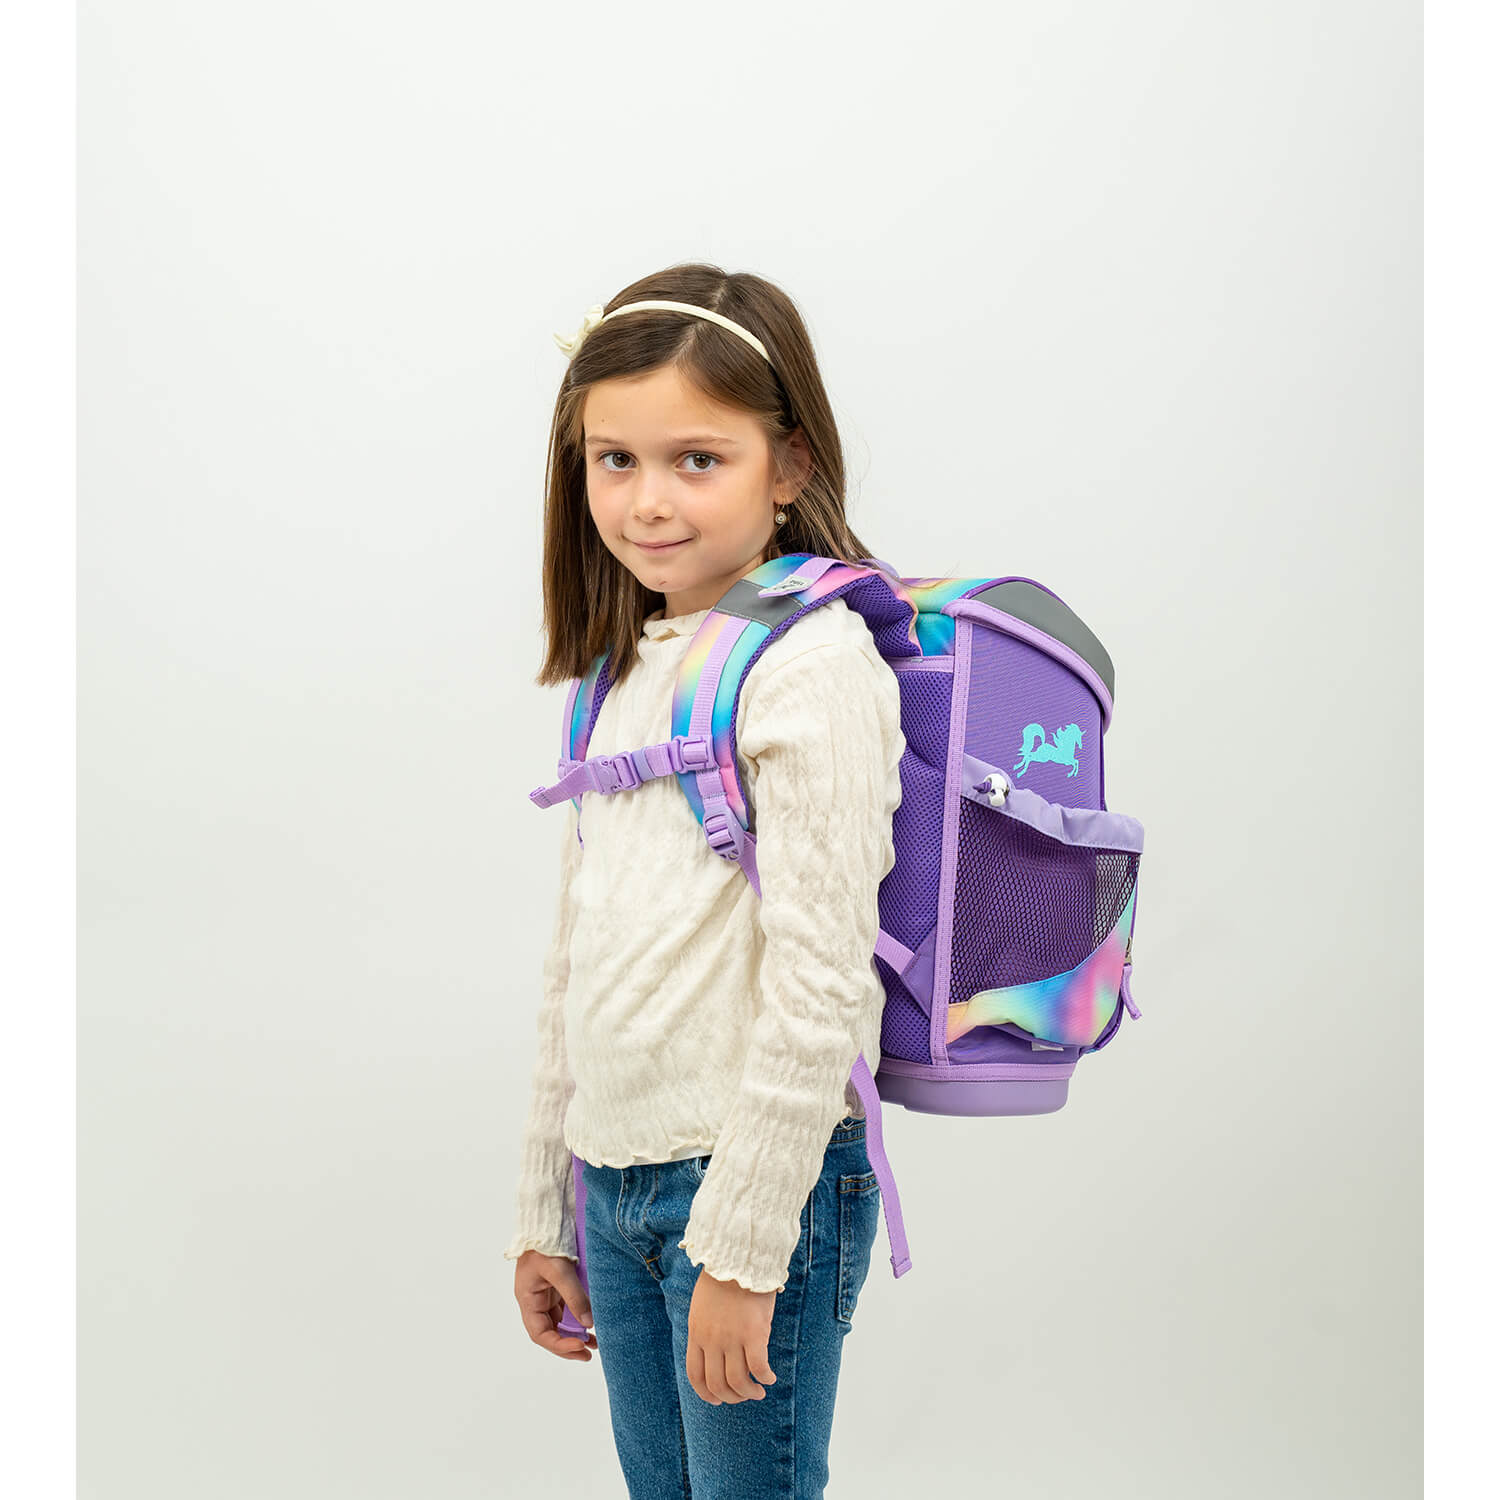 Mini-Fit Rainbow Color schoolbag set 5 pcs with GRATIS keychain